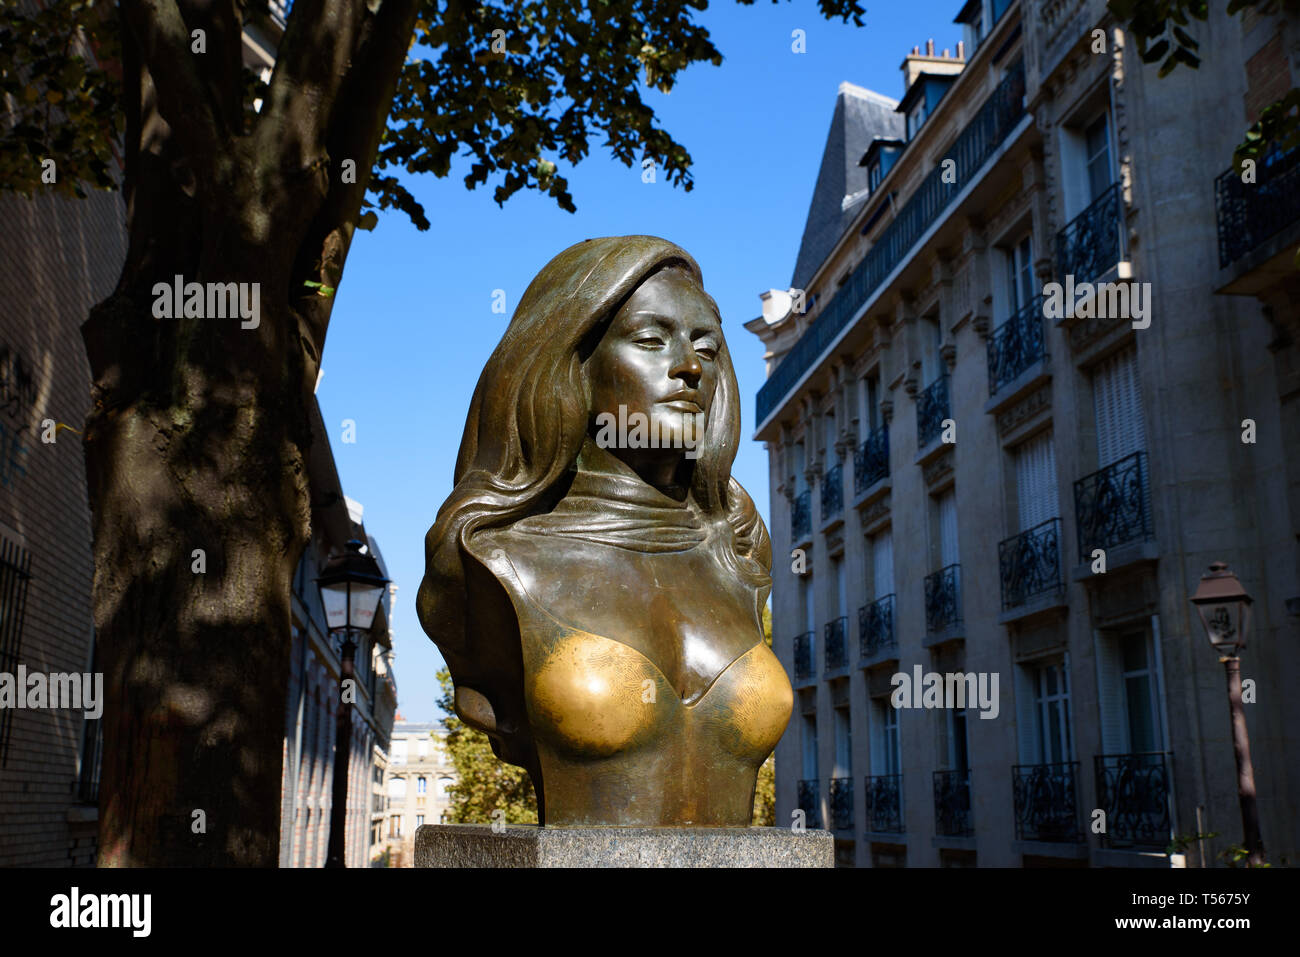 Statue de Dalida, une chanteuse française, à Montmartre, France Banque D'Images